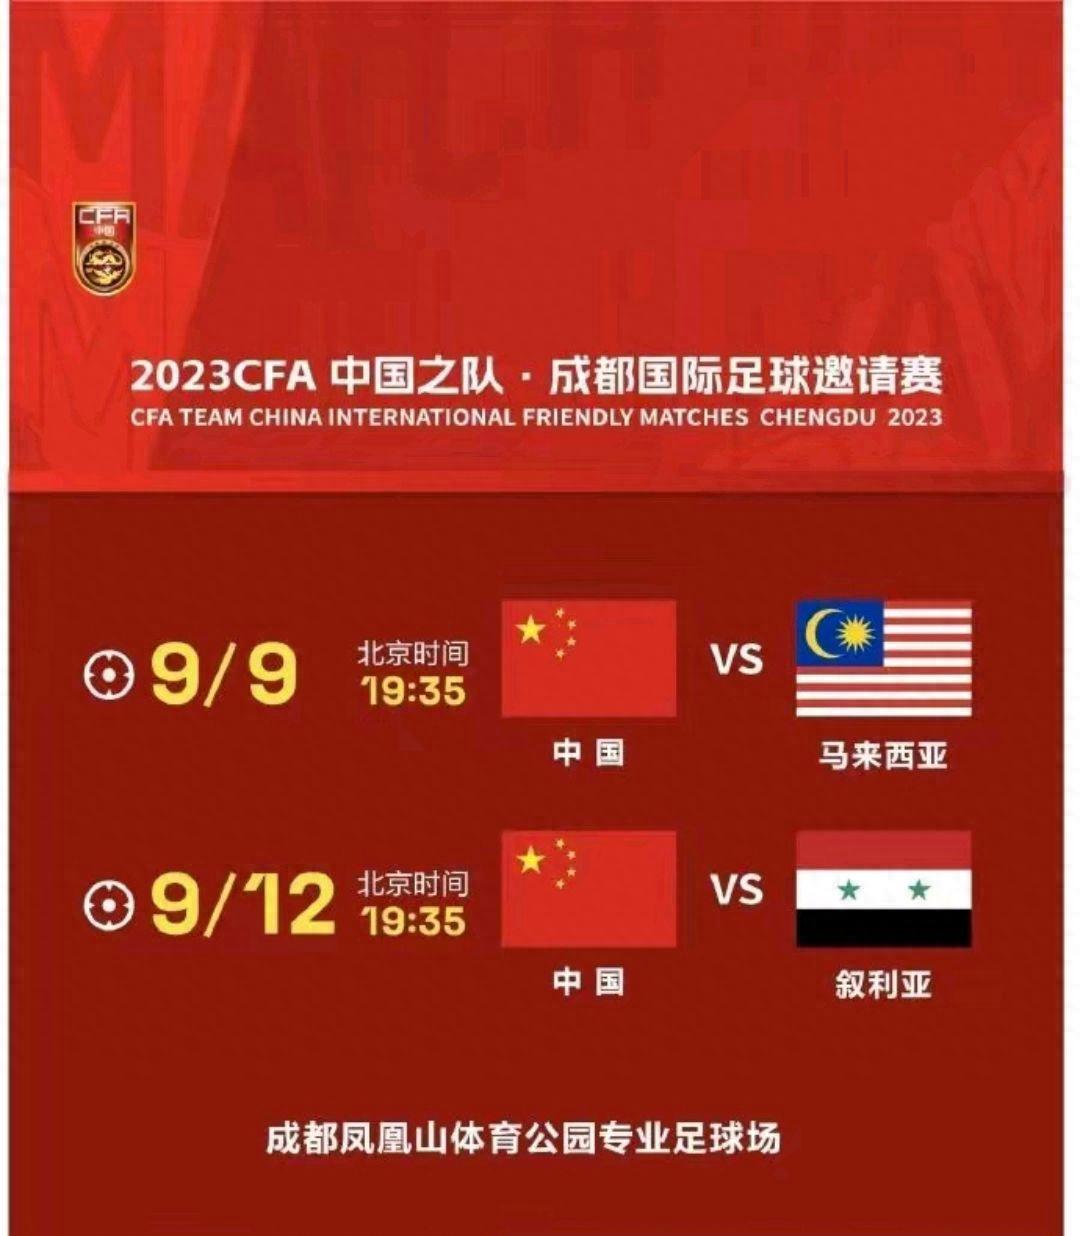 国足即将迎战马来西亚 艾克森：将热身赛当世预赛去踢并争取胜利(4)